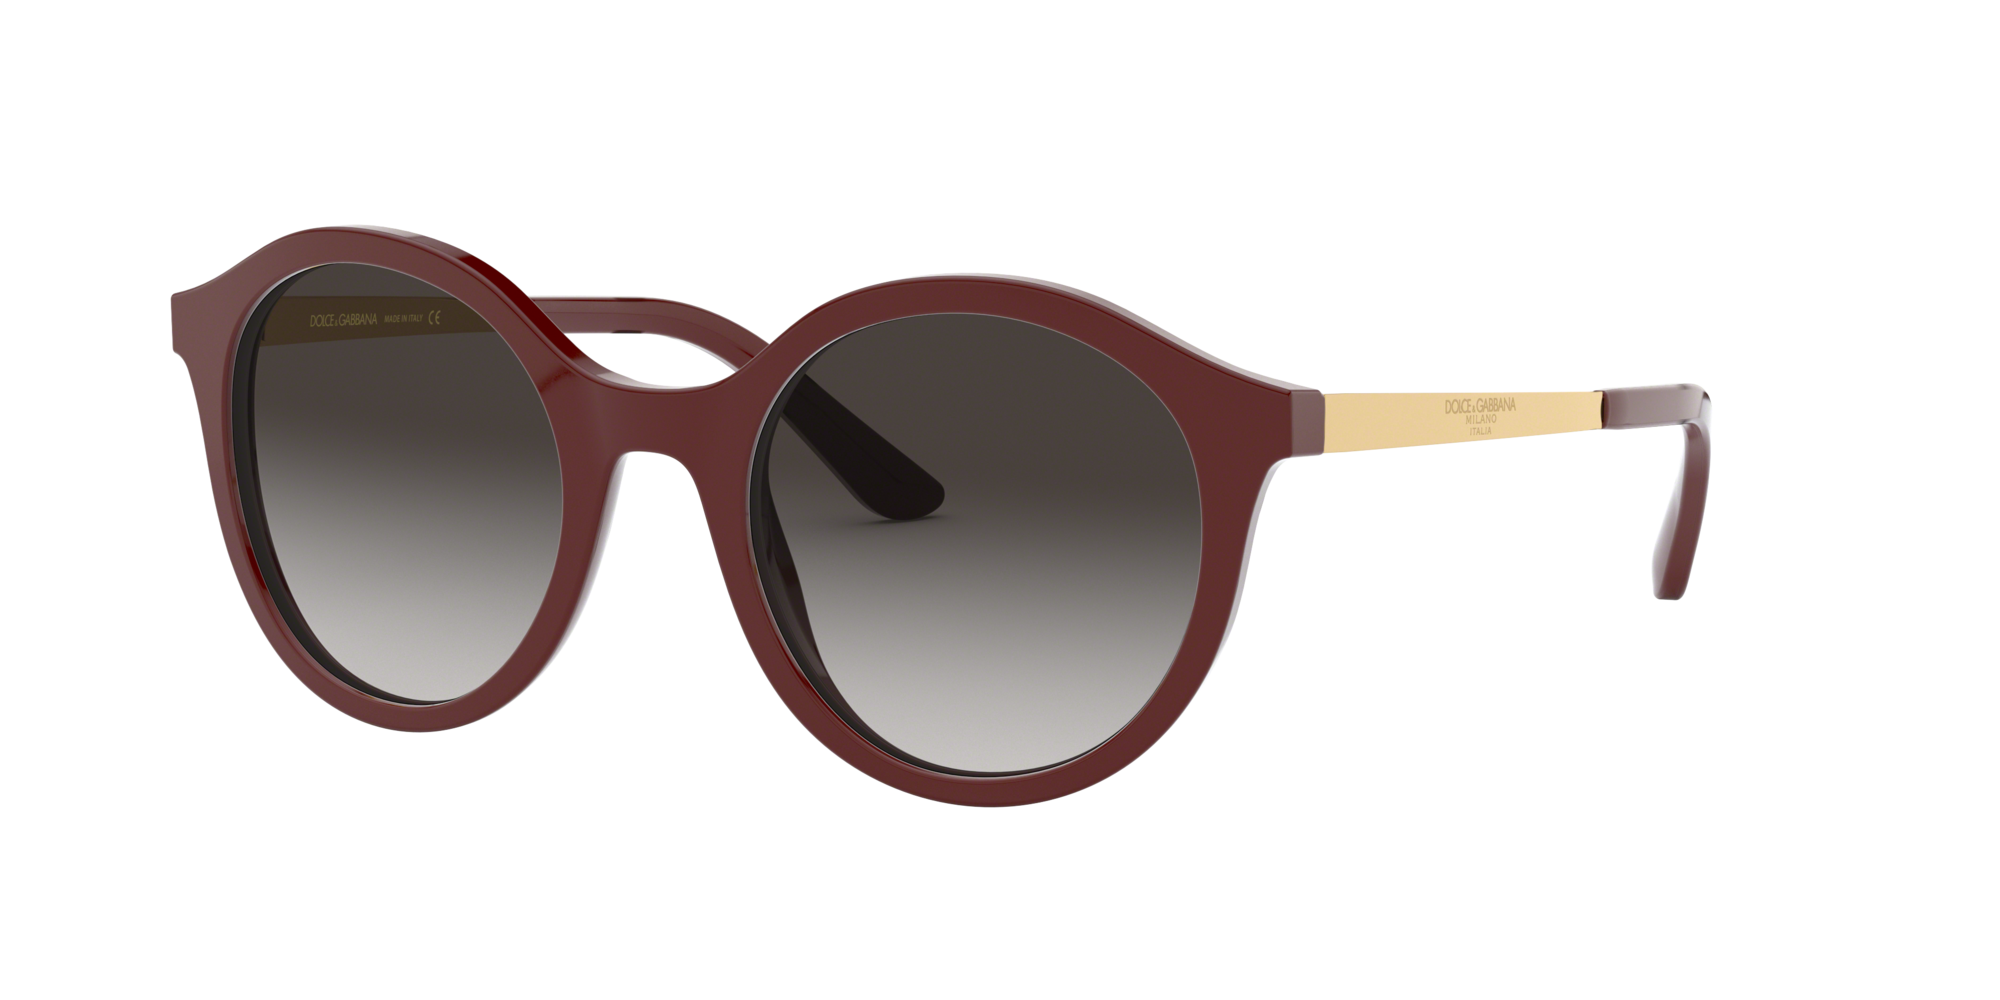 dolce & gabbana dd 8095 sunglasses